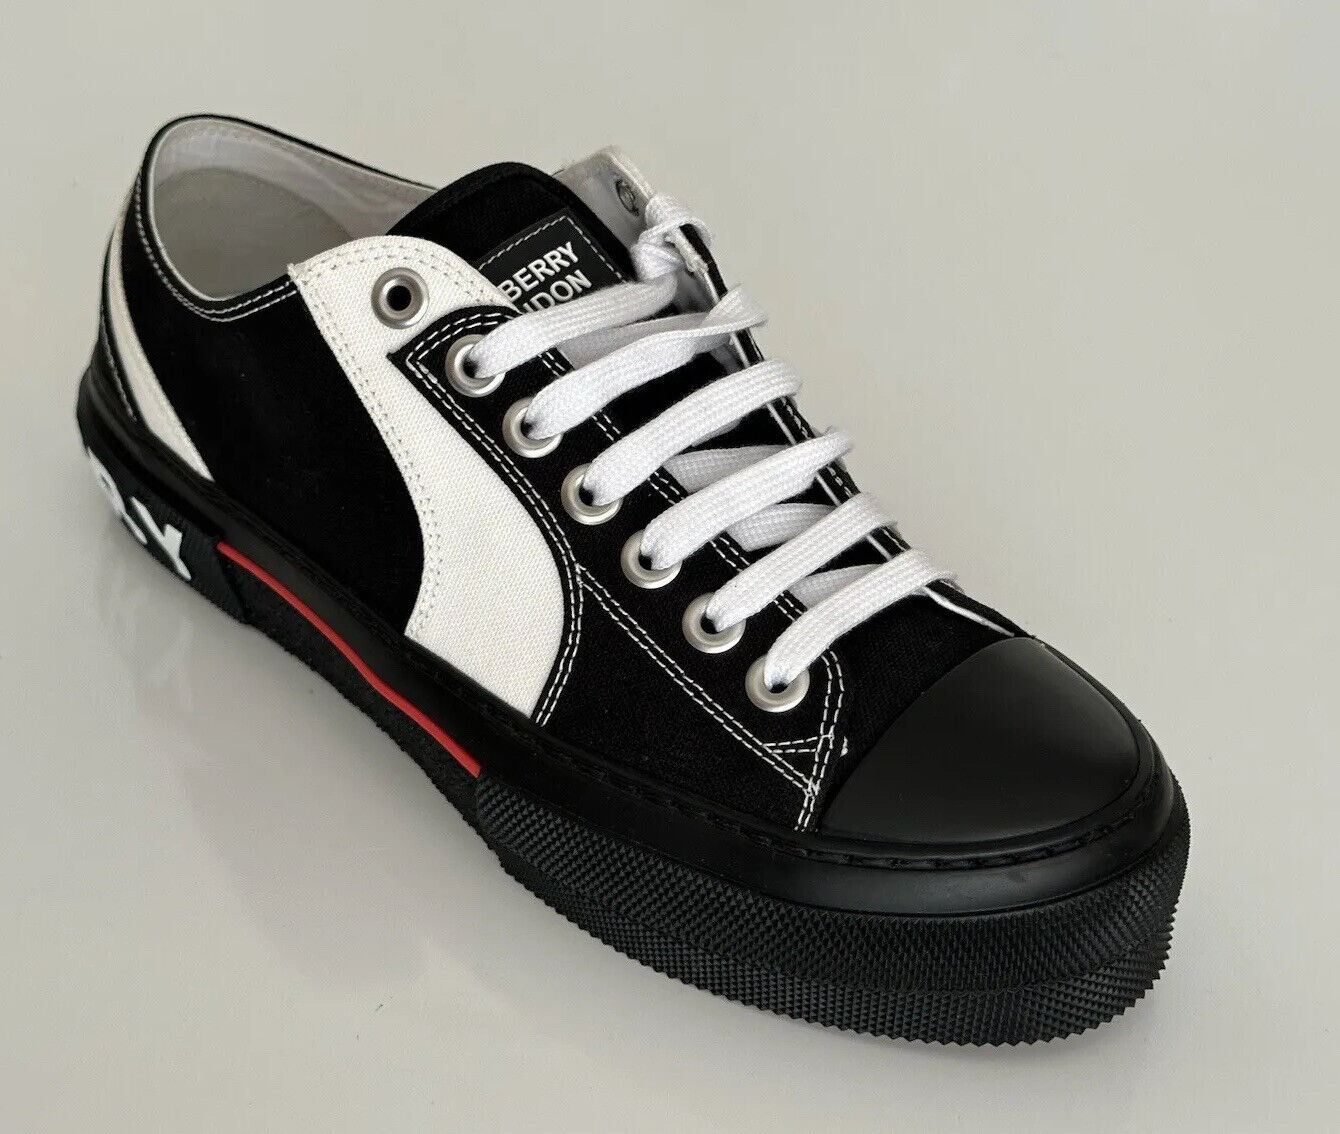 Мужские черно-белые низкие кроссовки Burberry стоимостью 720 долларов США 10 США (43 евро) 8056929 IT 